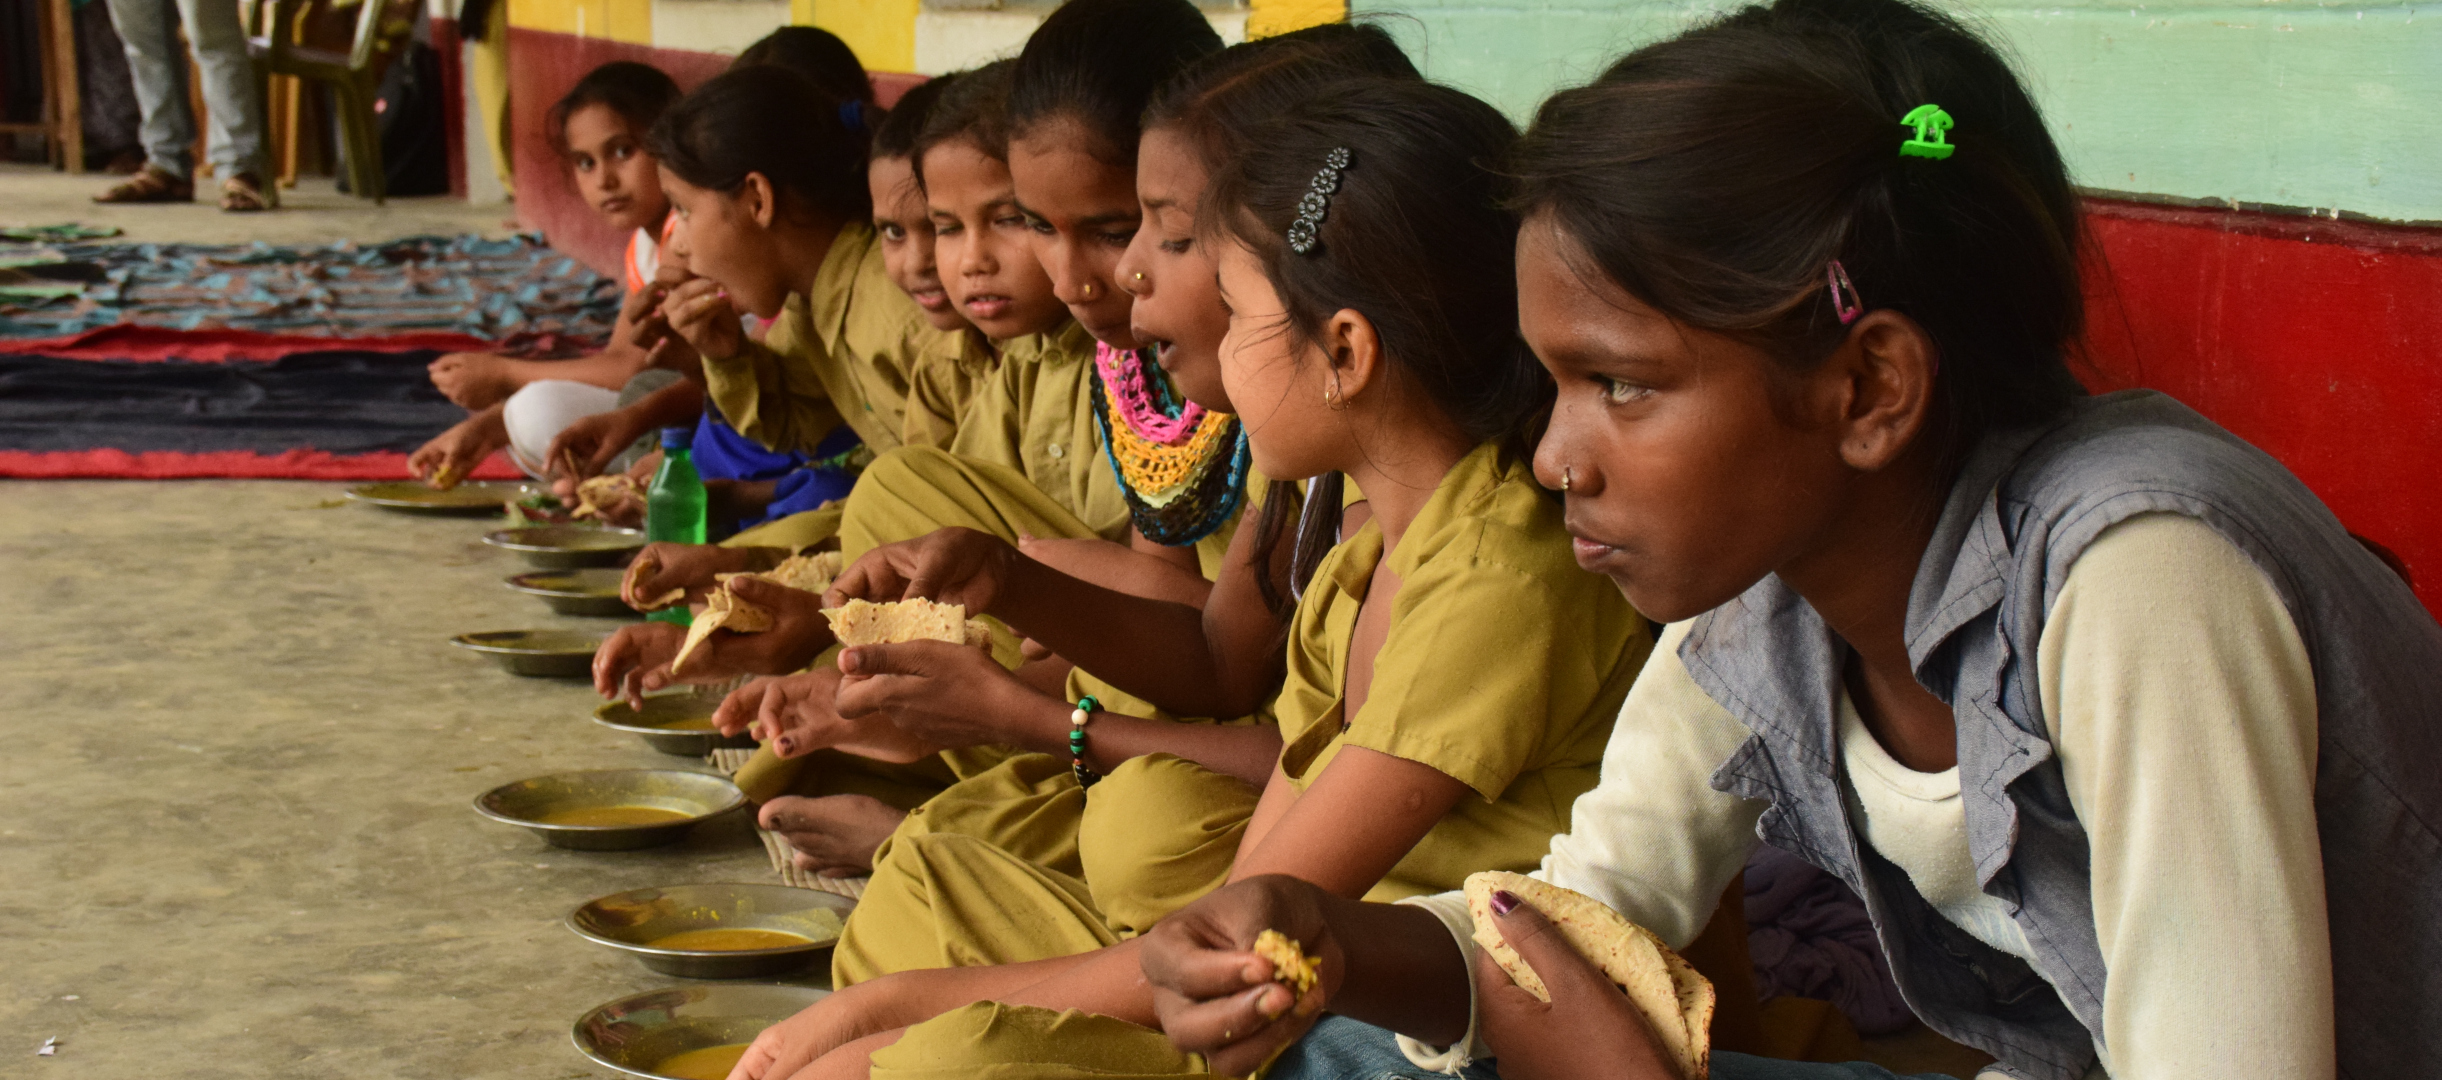 Mädchen in Indien bei einer Schulmahlzeit mit Linsen und Brot